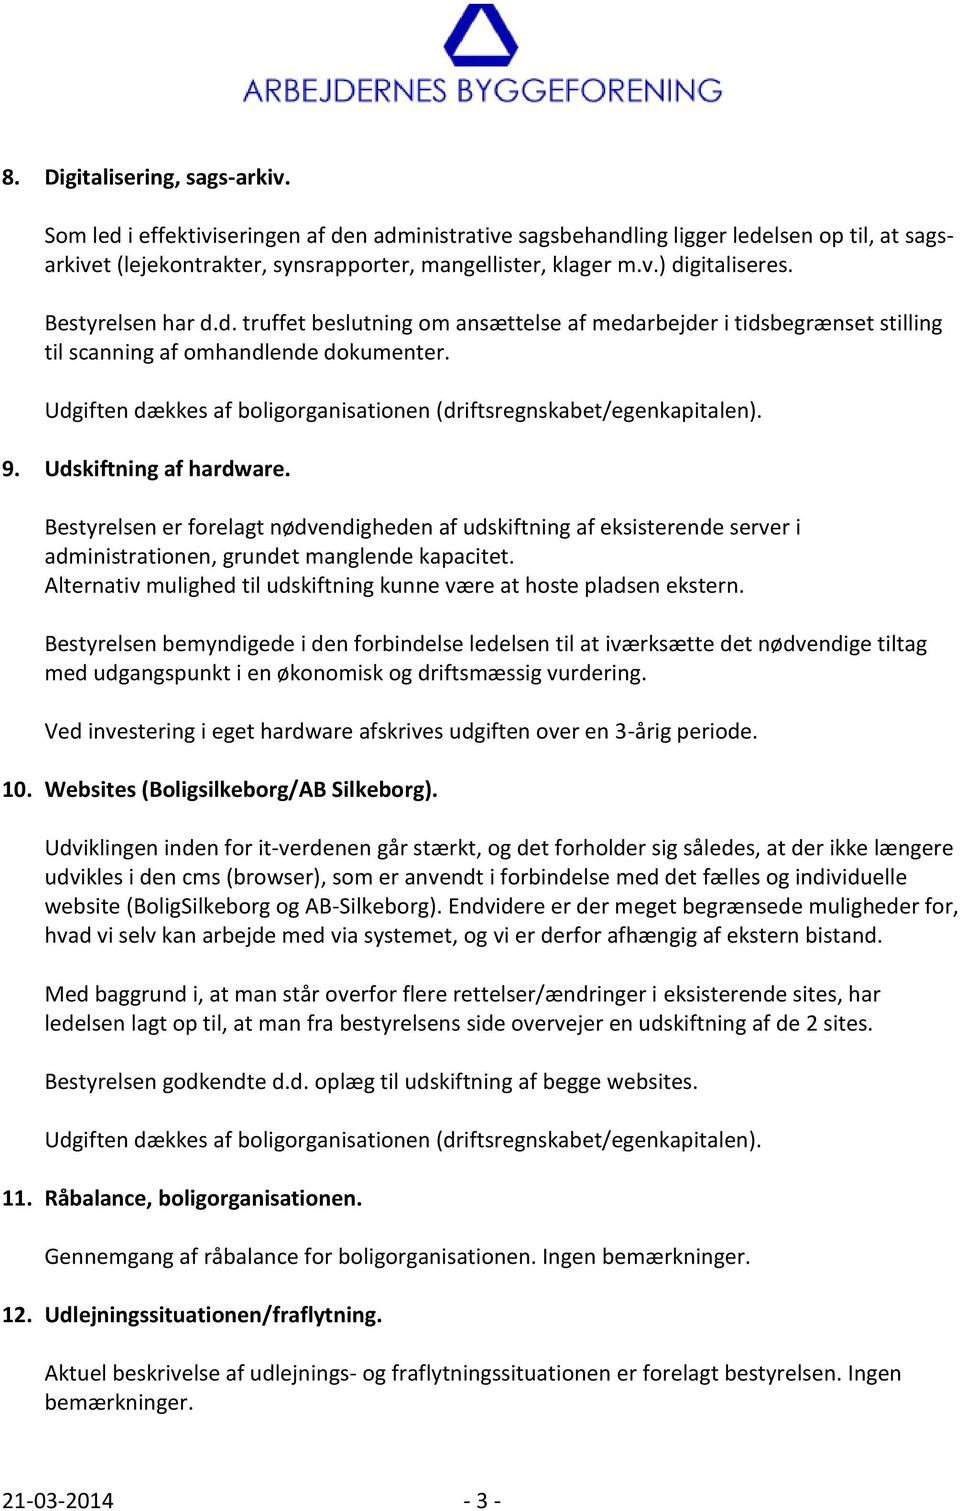 Bestyrelse ledelse fremlagde ledelsespåtegning af 19. 2014 for Arbejdernes Byggeforening afdelinger. - PDF download